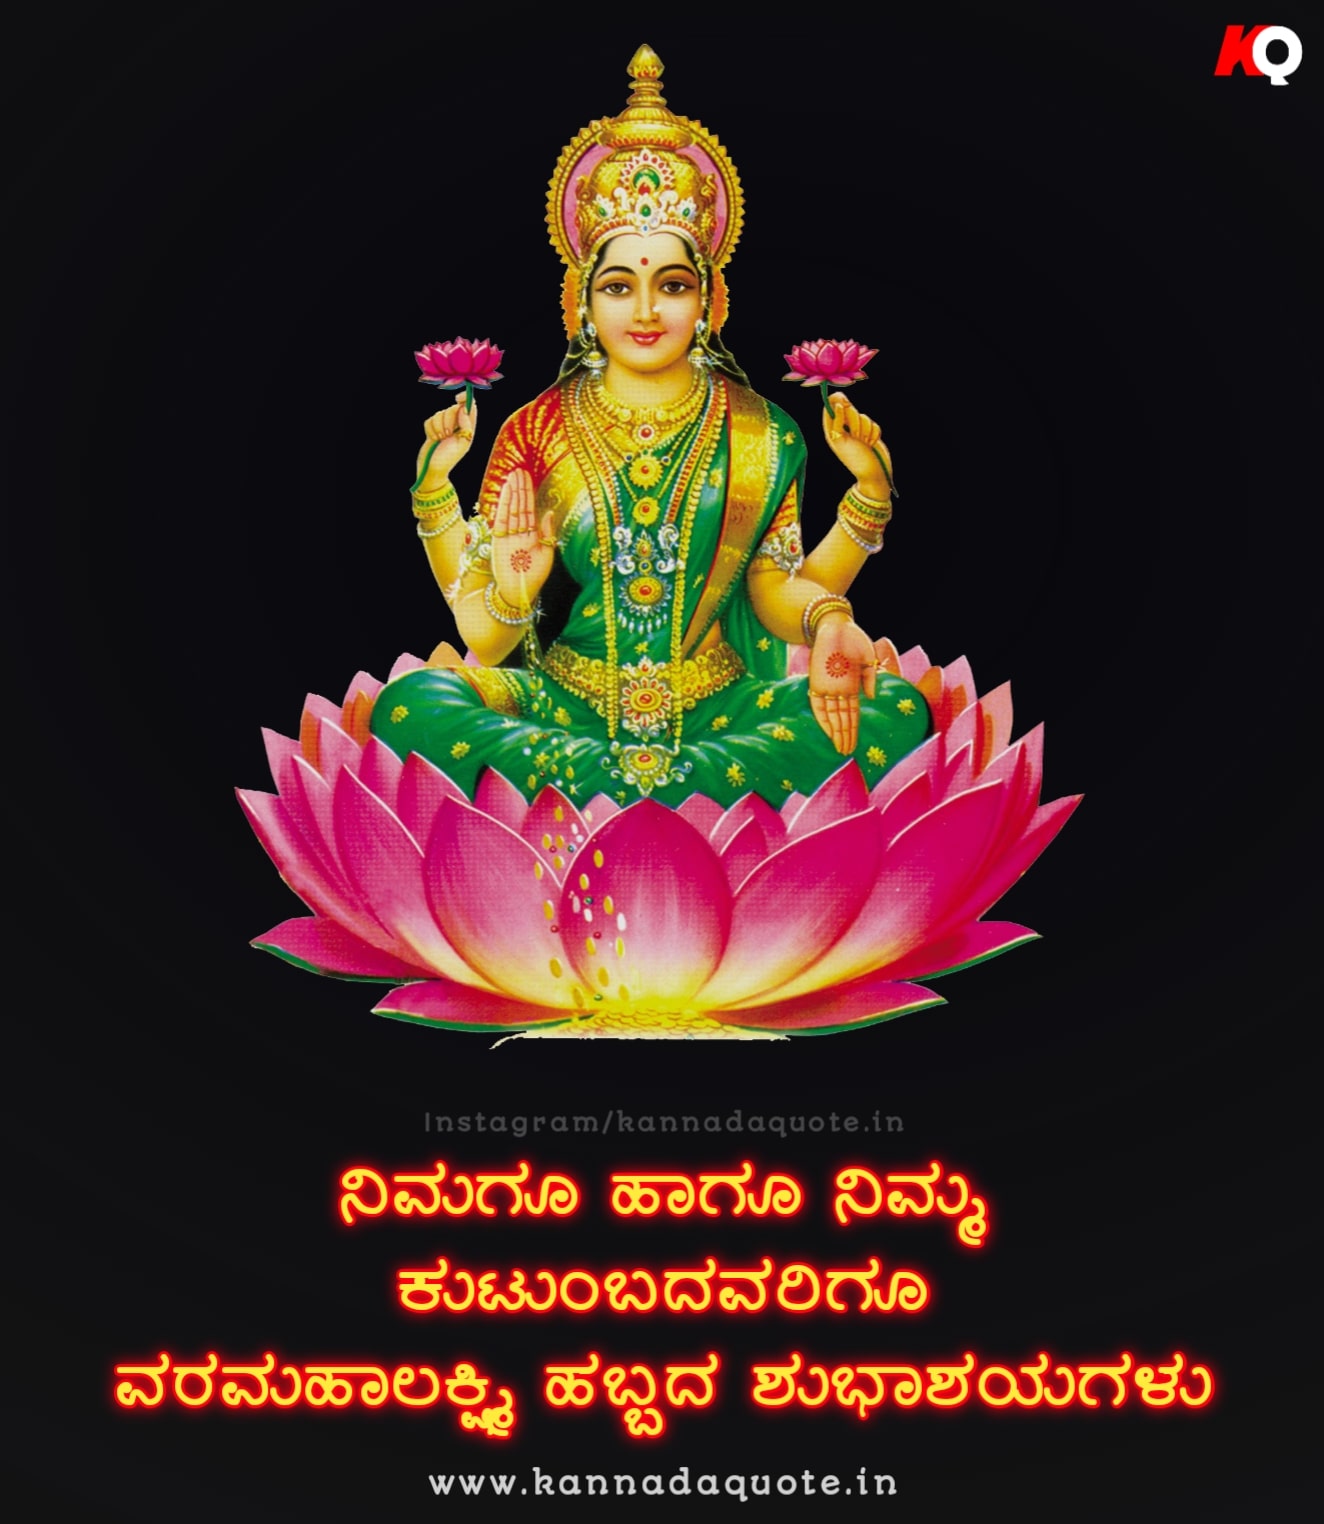 Kannada language varamahalakshmi wishes in kannada